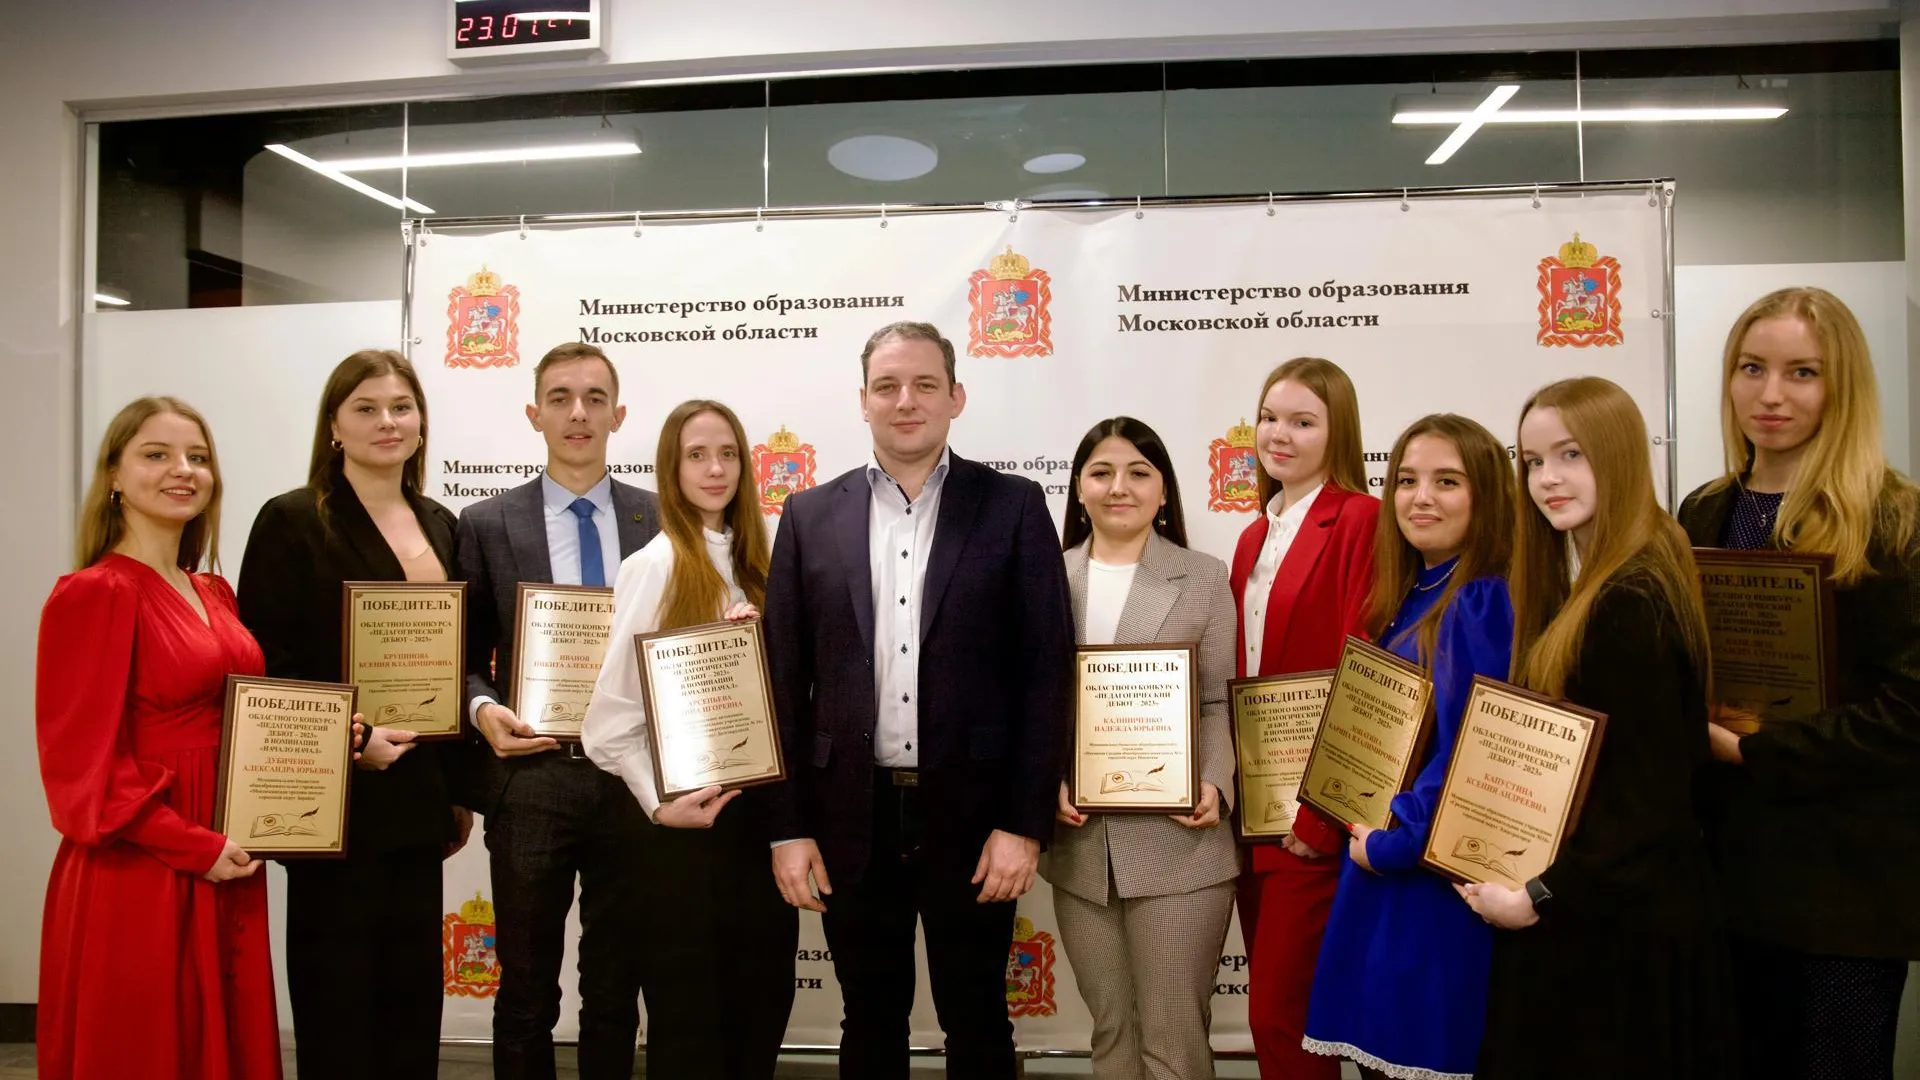 Победители подмосковного конкурса педагогов получили награды